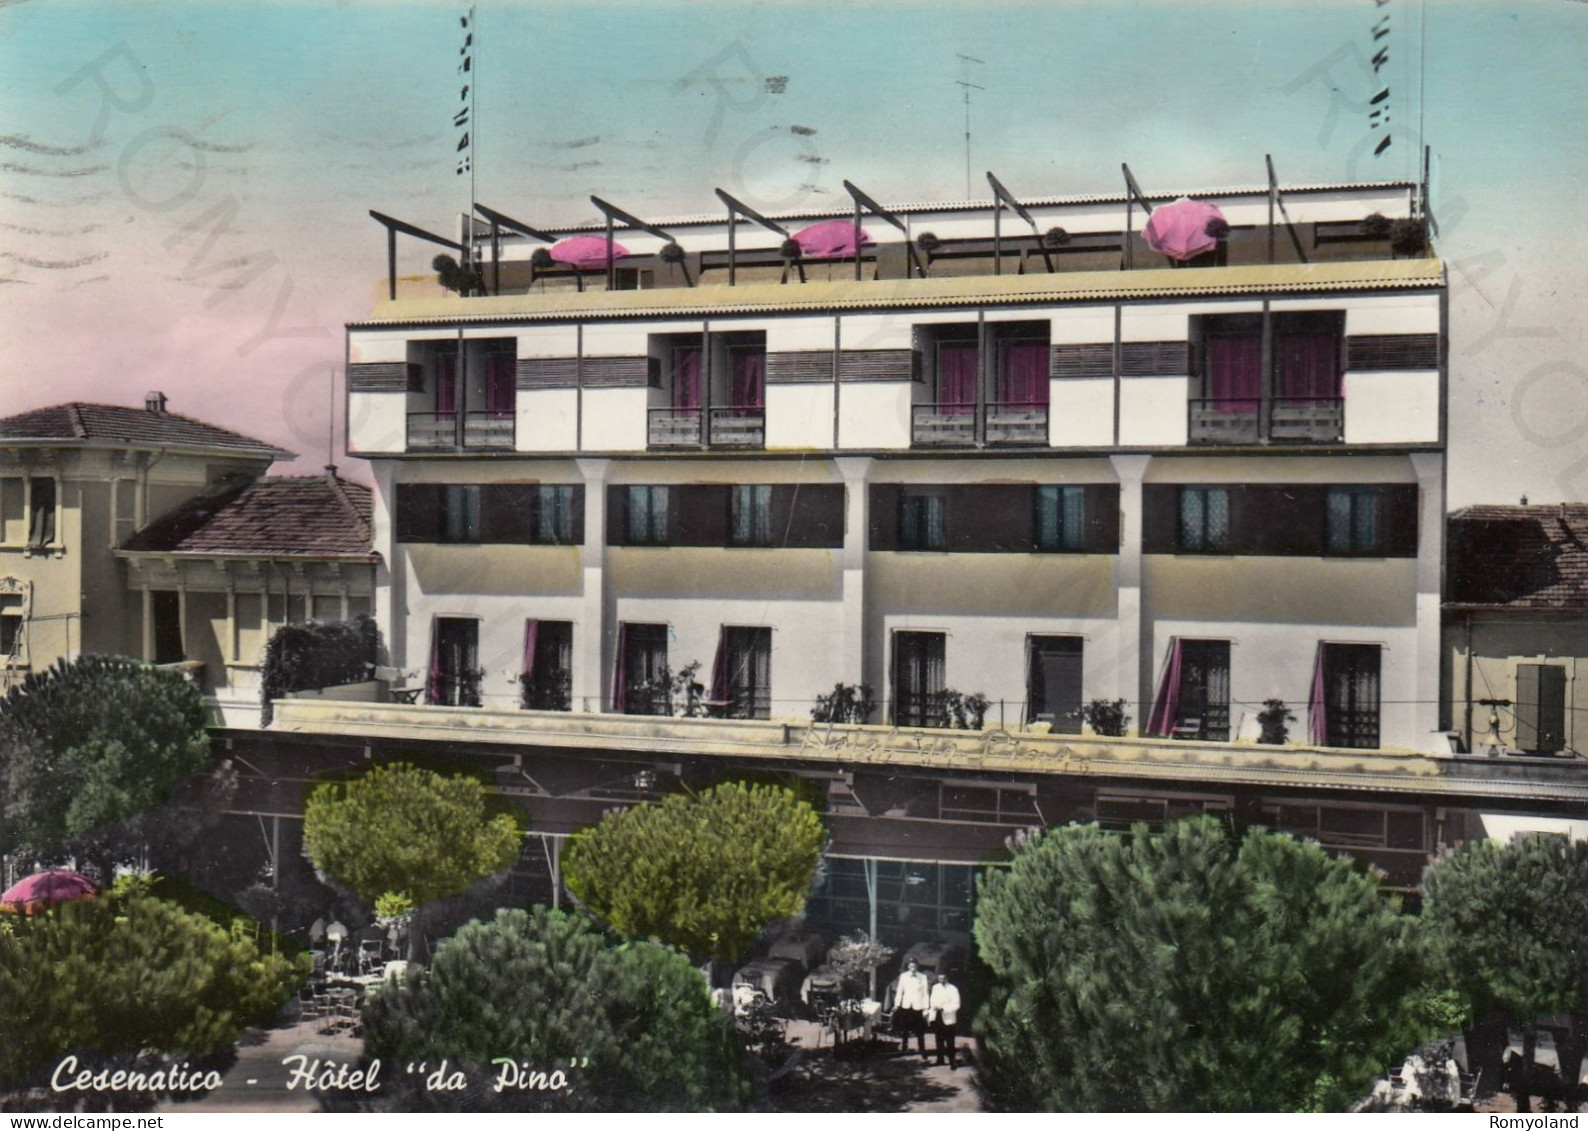 CARTOLINA  CESENATICO,CESENA,EMILIA ROMAGNA-HOTEL "DA PINO"-SPIAGGIA,MARE,VACANZA,BARCHE,BELLA ITALIA,VIAGGIATA 1957 - Cesena